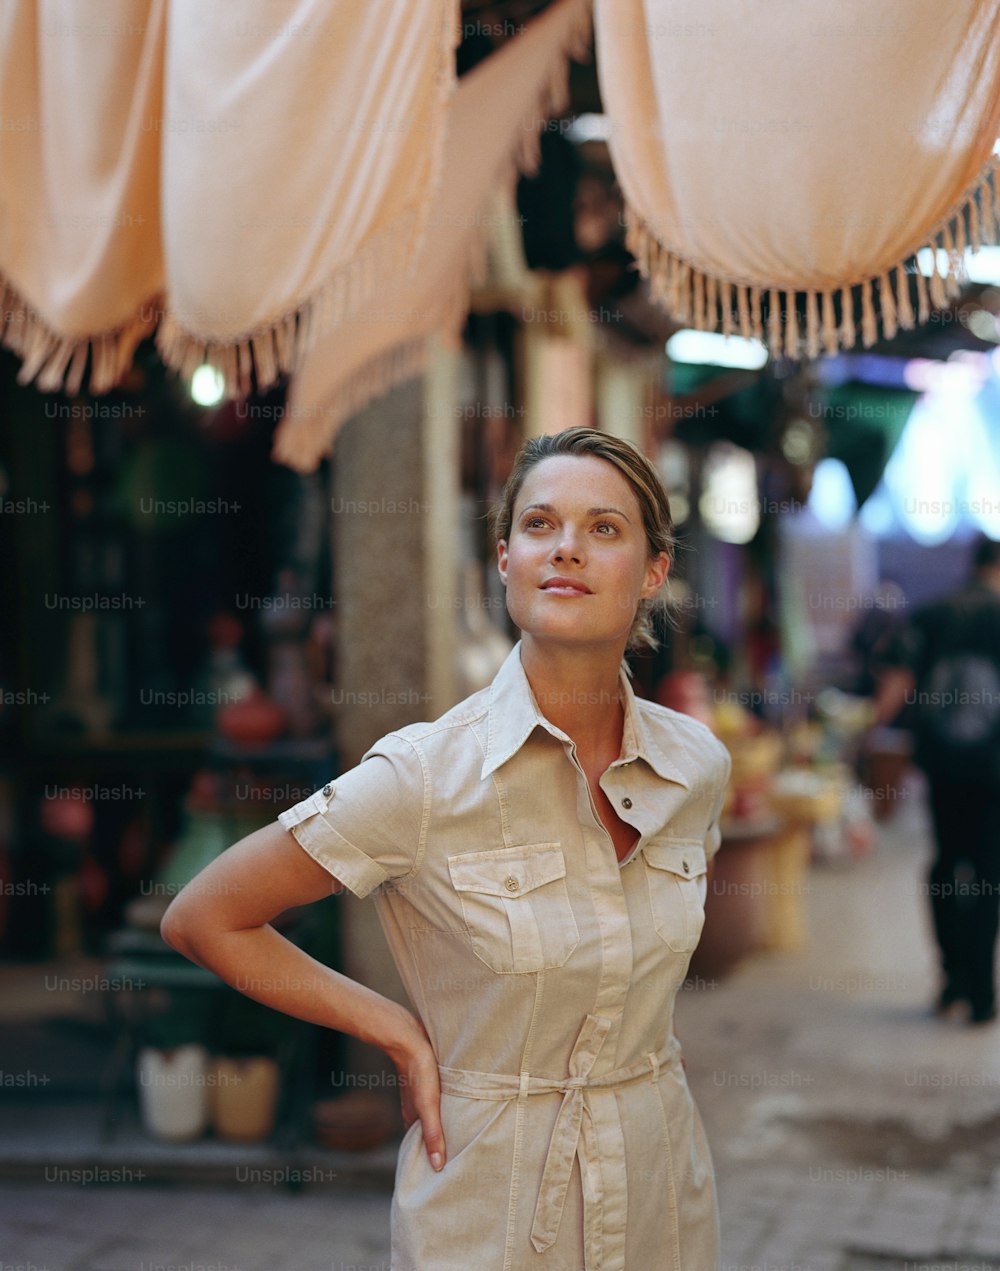 Una donna in piedi di fronte a un negozio con le mani sui fianchi